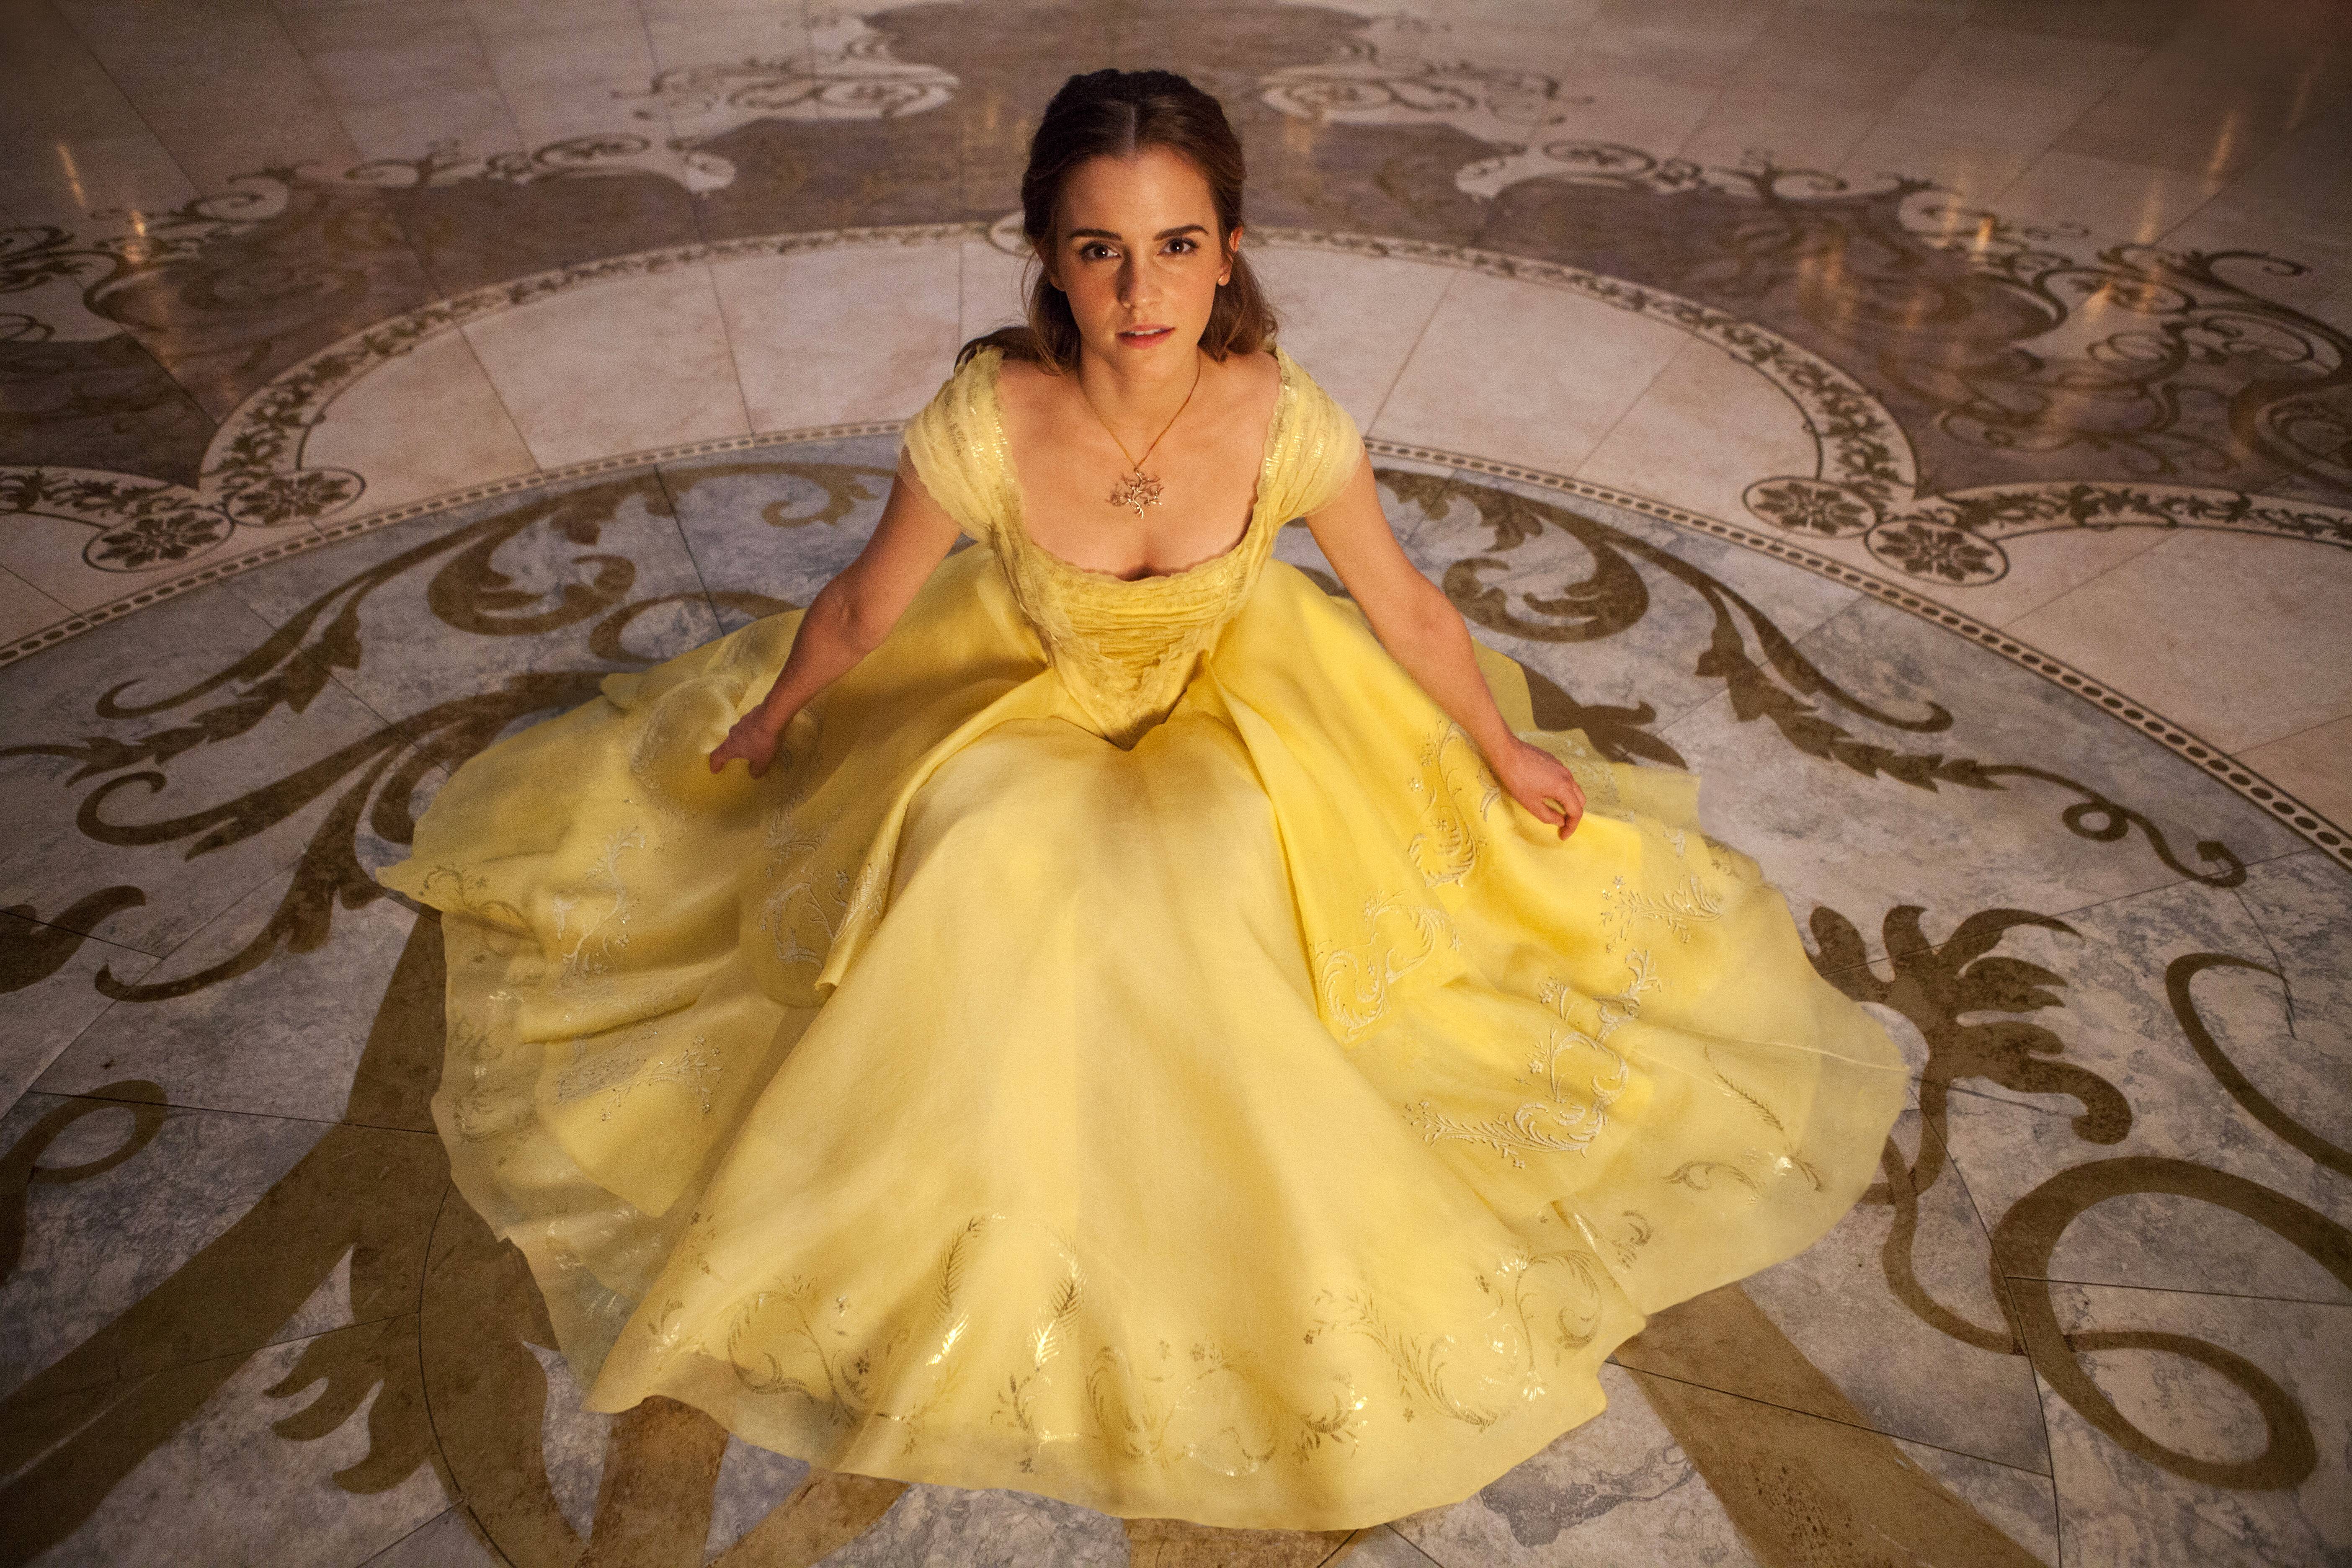 Emma Watson in a yellow dress